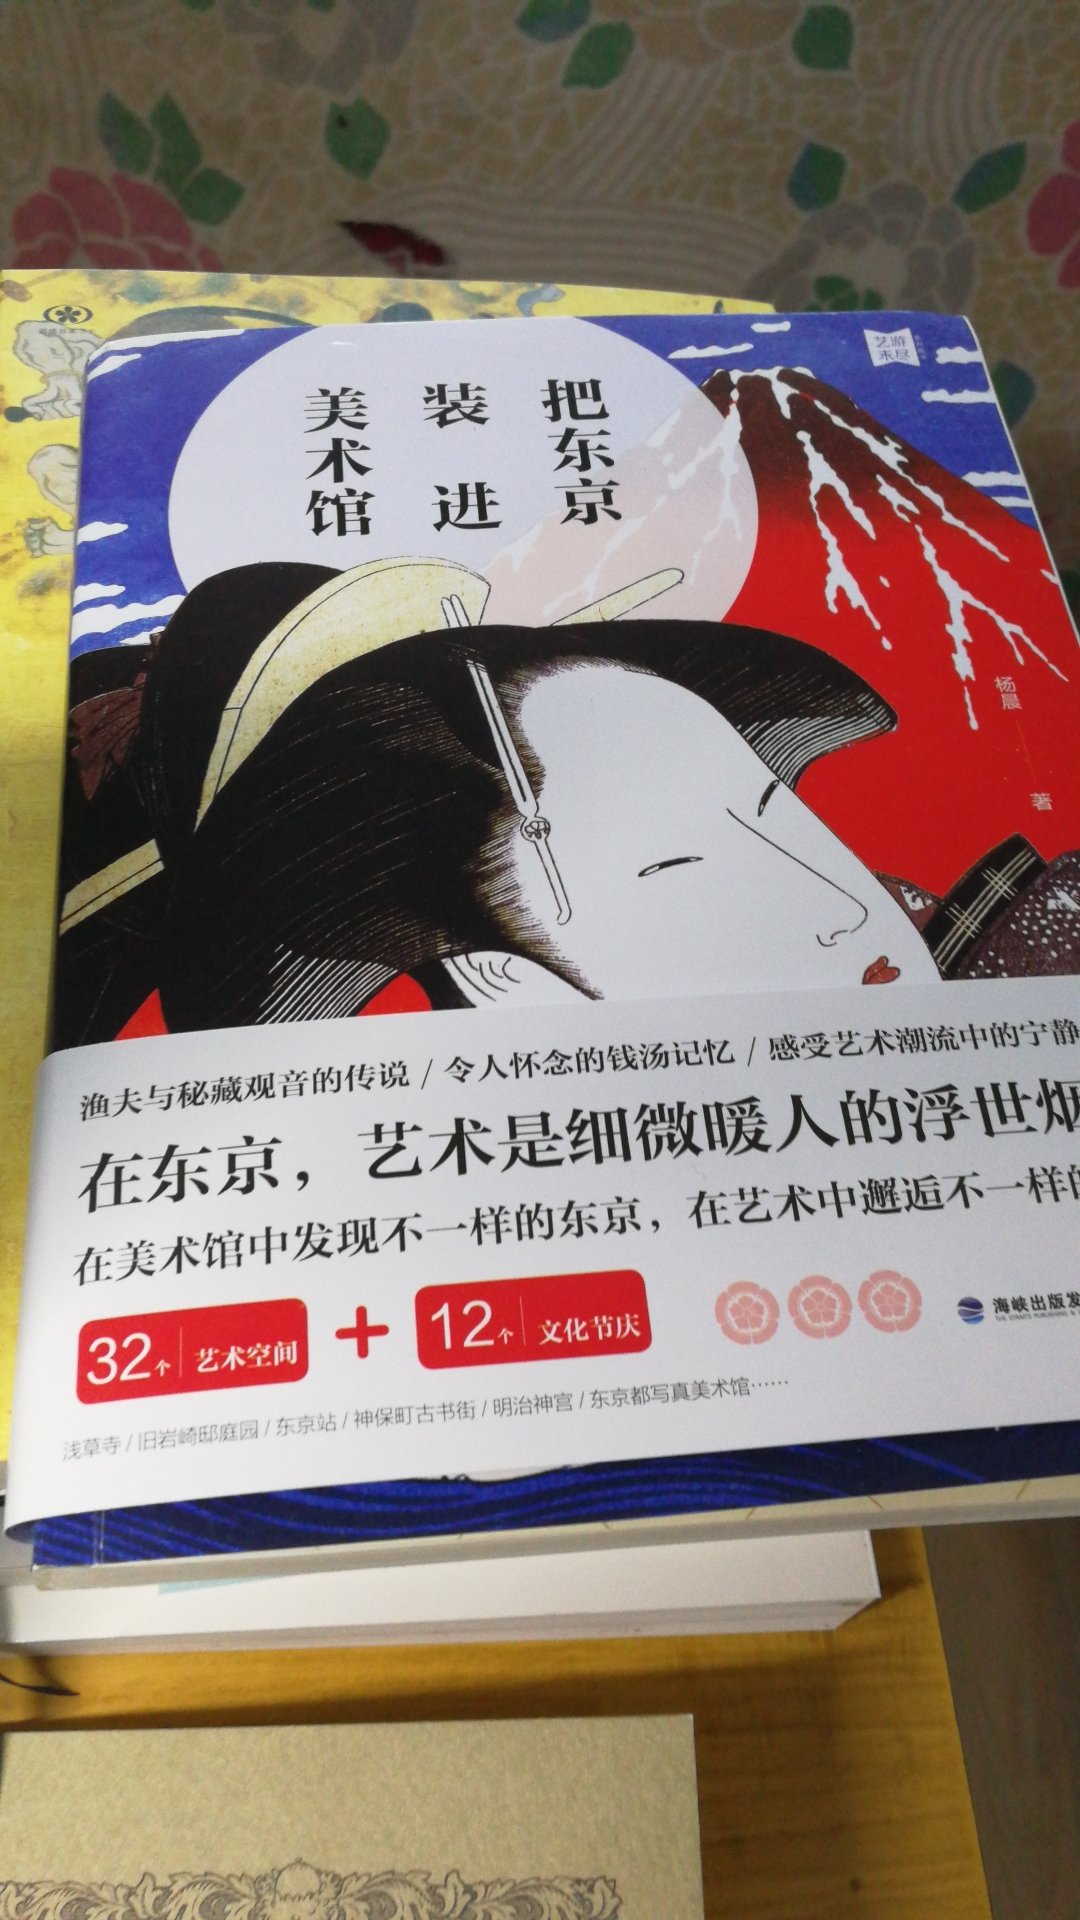 过几天去东京展开美术馆之旅，这本书可以了解一些。